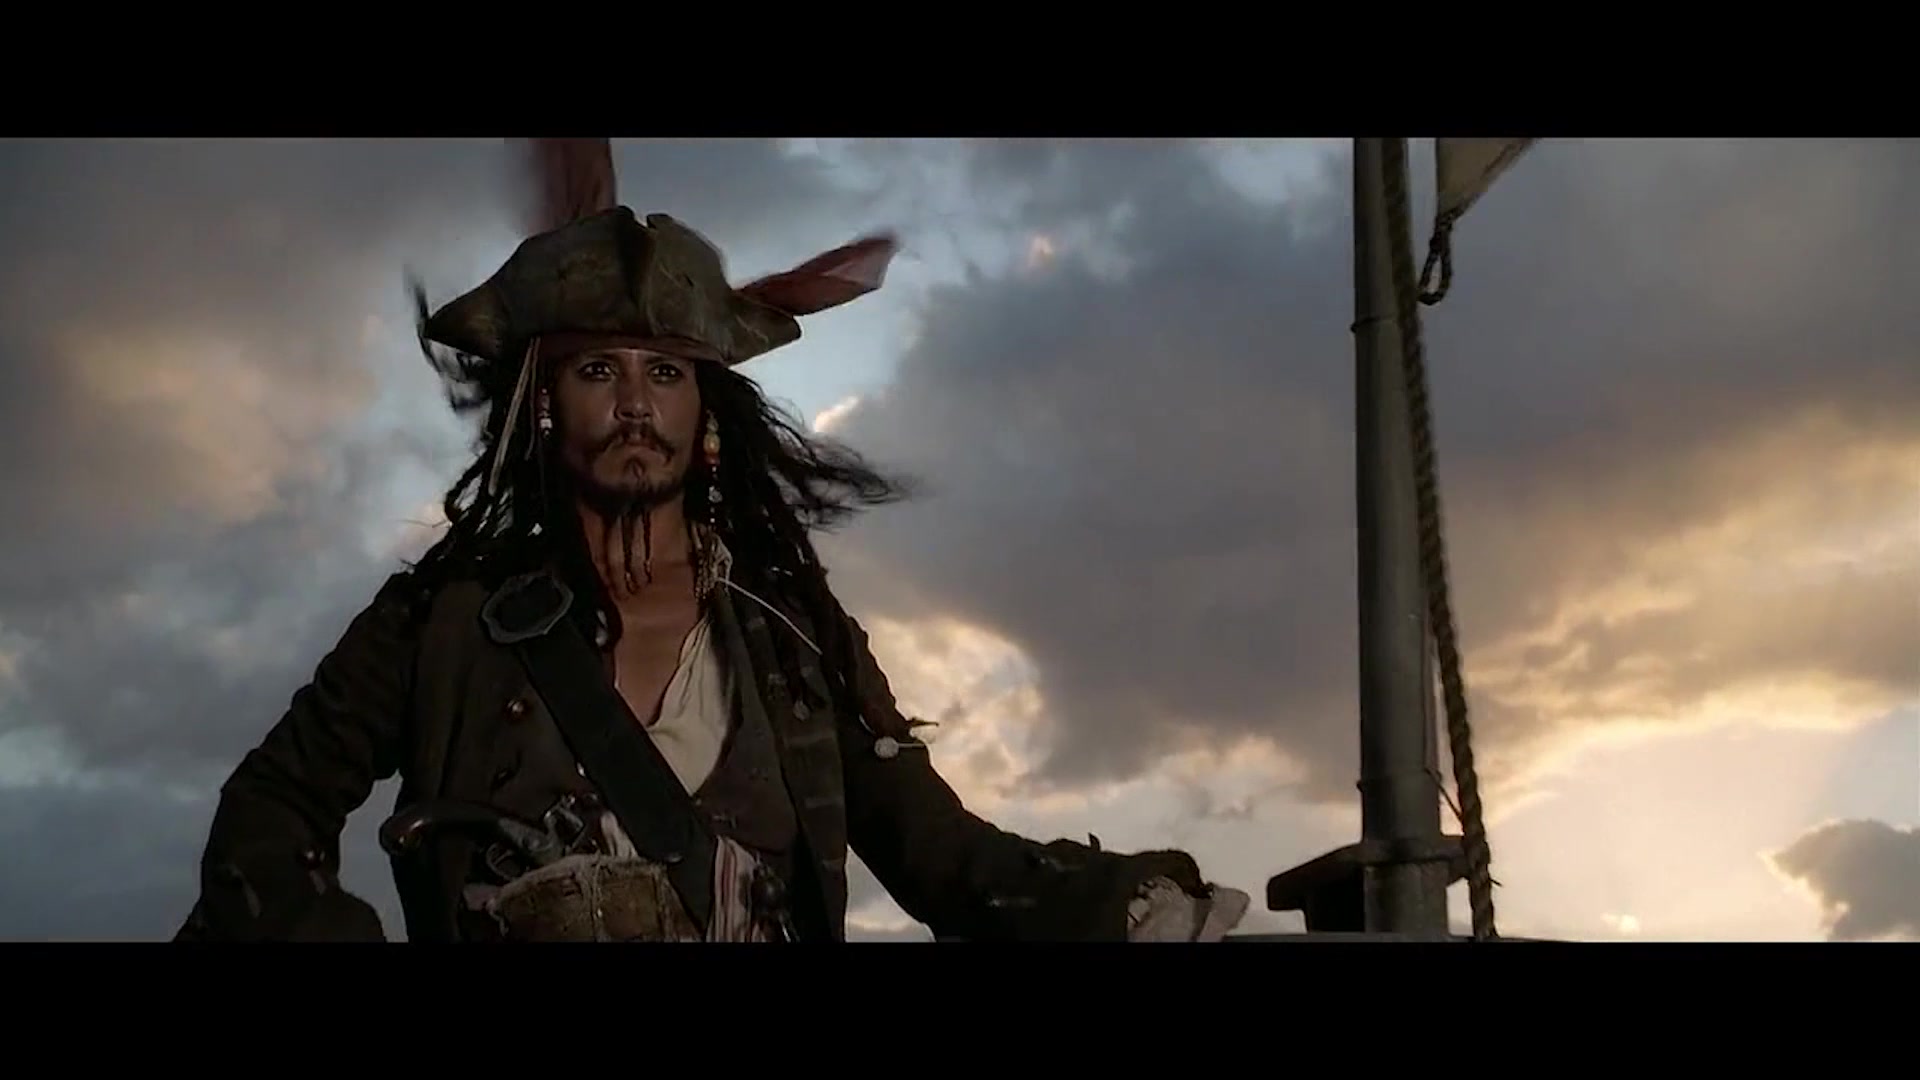 【加勒比海盗】我是骚断腿的船长杰克.斯派洛_哔哩哔哩_bilibili